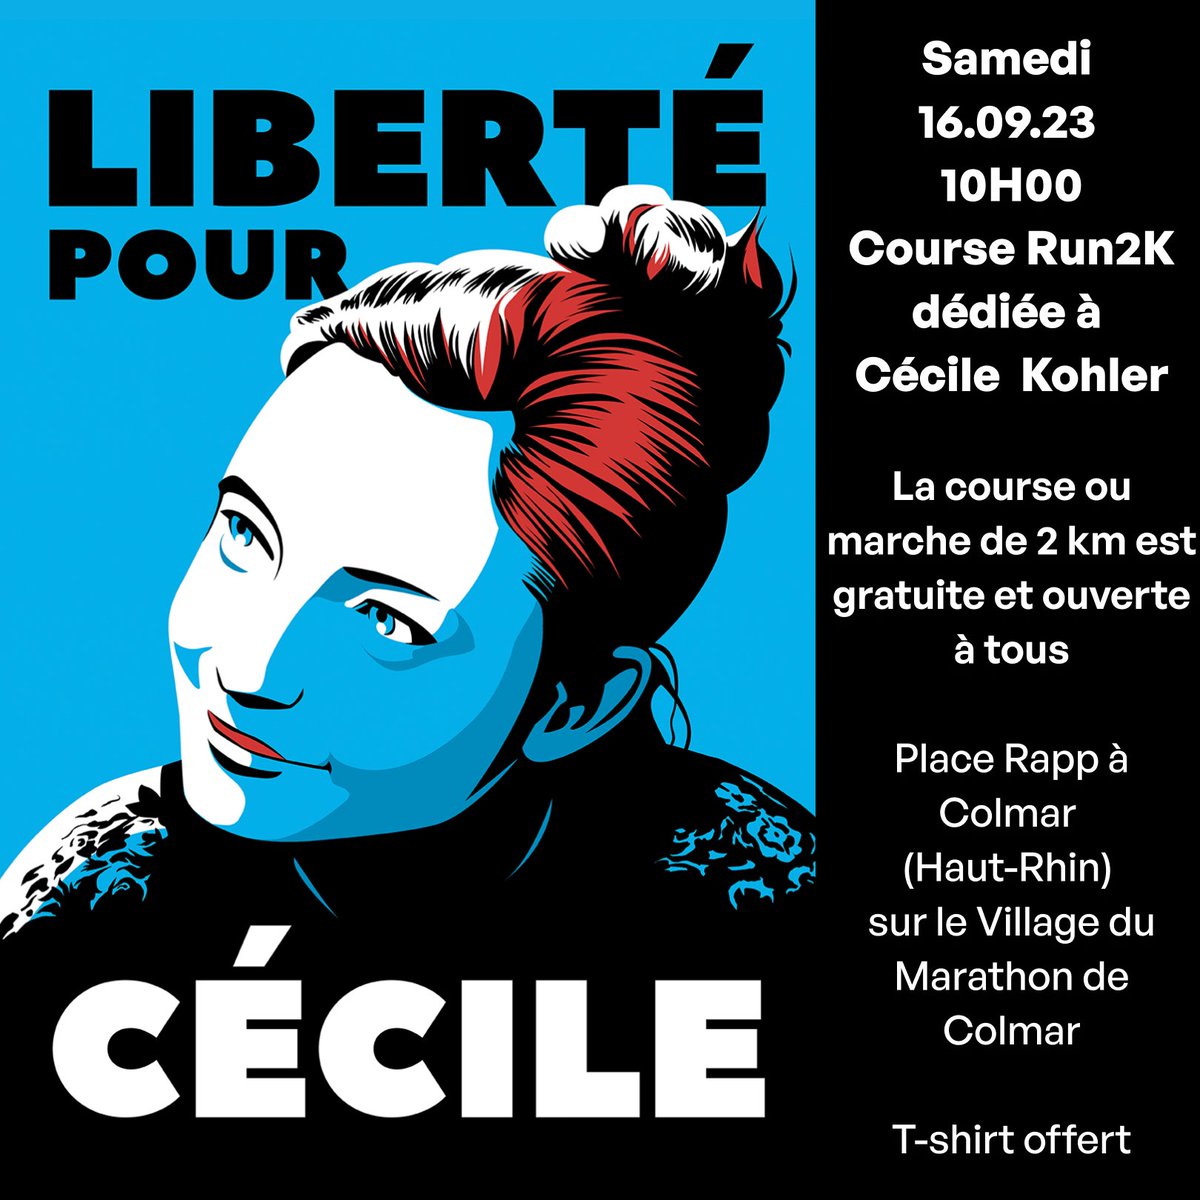 Le 16.09.2023 à 10h, la course Run2K à Colmar sera dédiée à Cécile Kohler, professeure de français, détenue en Iran depuis 16 mois. Course/marche de 2 km gratuite et ouverte à tous sans inscription. Venez nombreux pour nous soutenir ❤️
paysdecolmarathletisme.fr
#LibertépourCécile